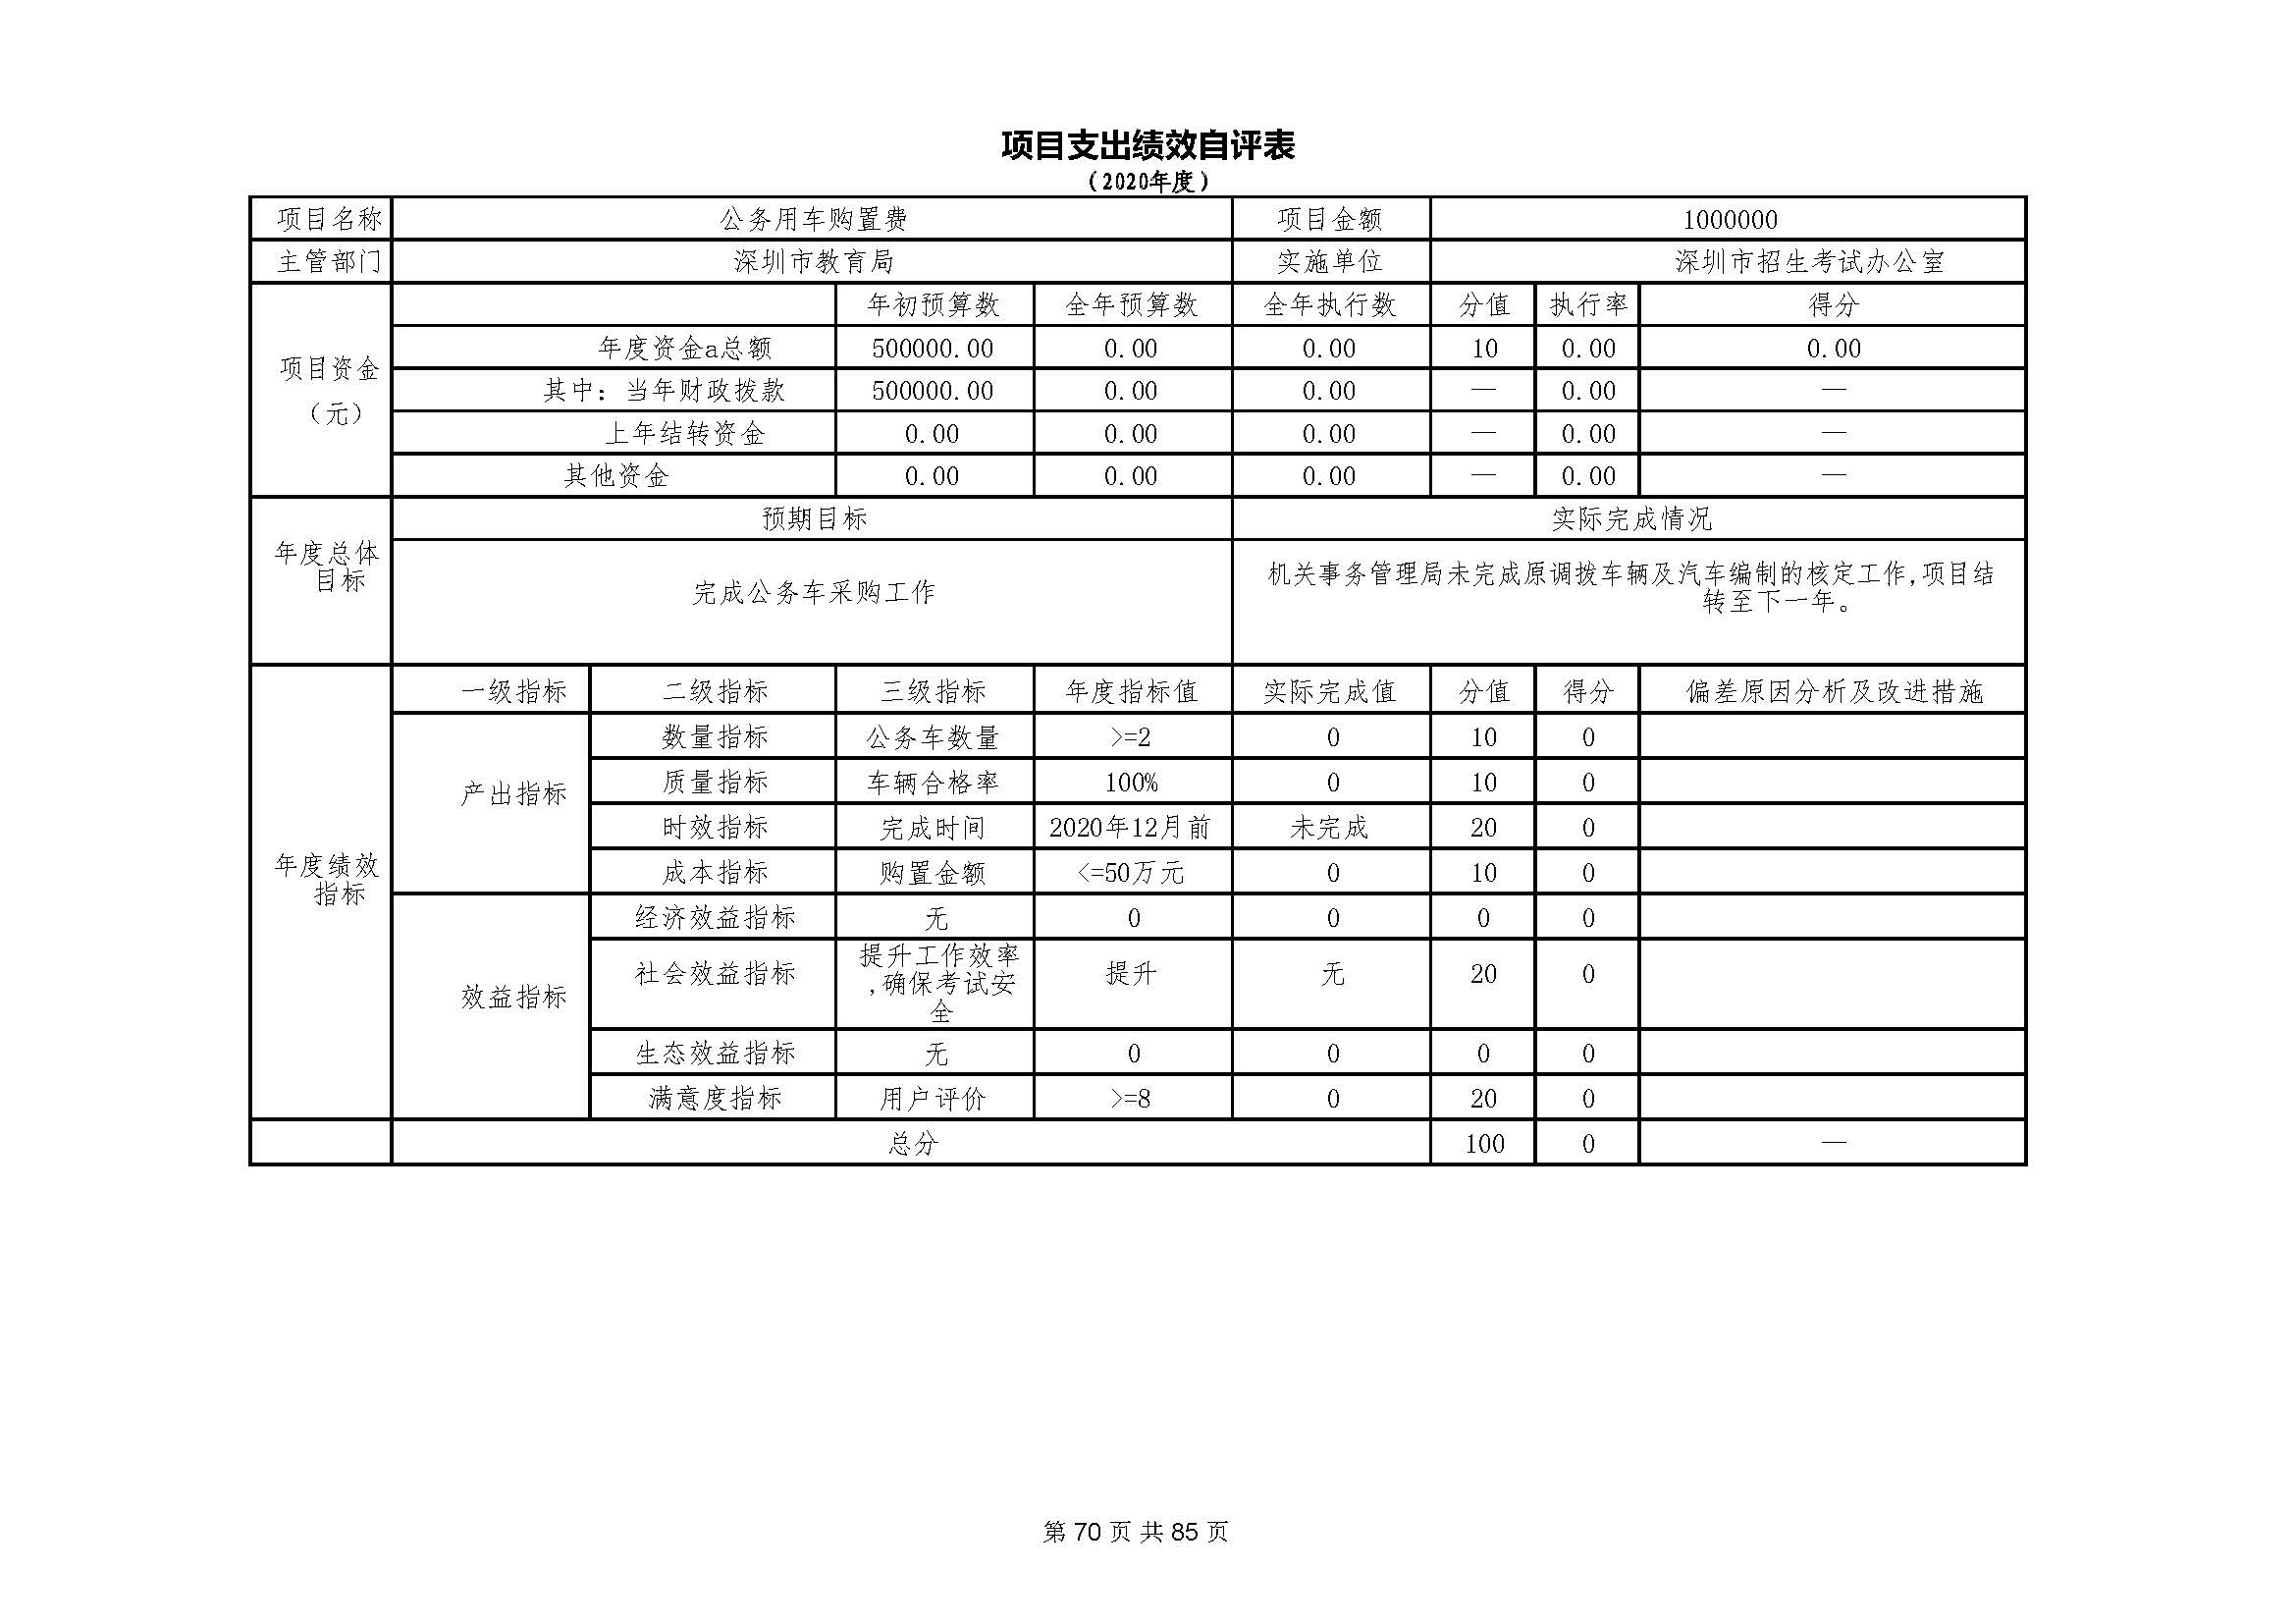 深圳市招生考试办公室2020年度部门决算_页面_71.jpg